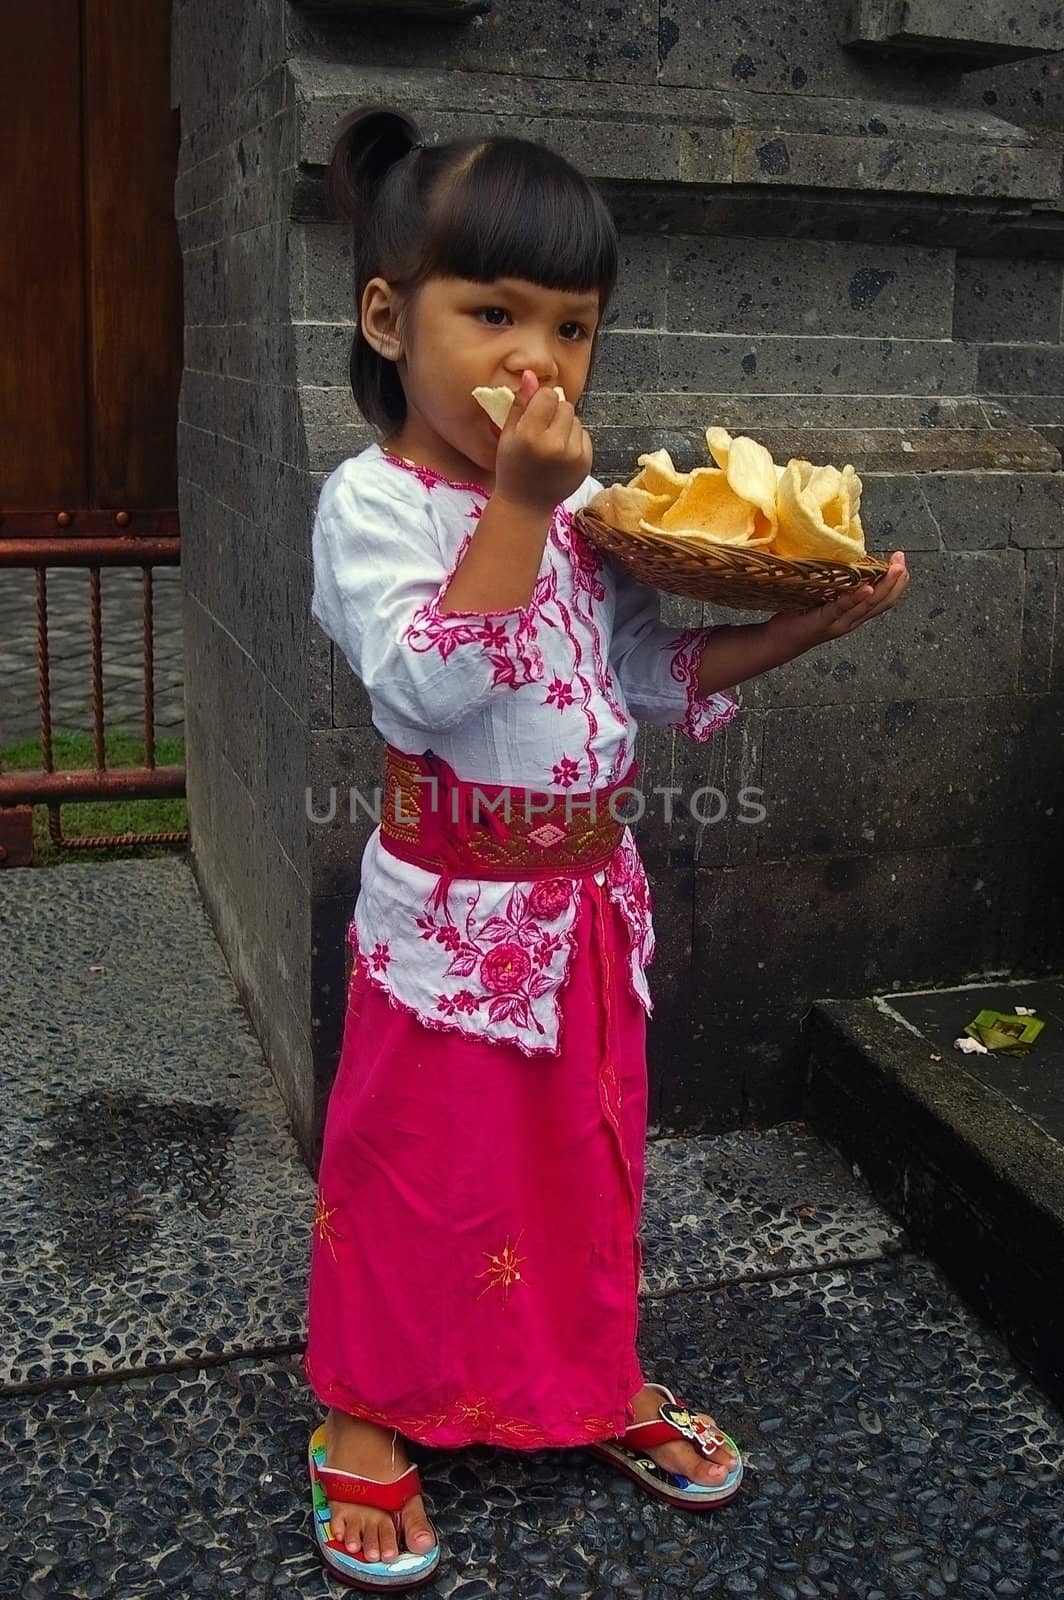 Bali (Indonesian) girl eating  Krupuk Udang(Prawn/Shrimp crackers), Jimbaran, Bali, Indonesia.